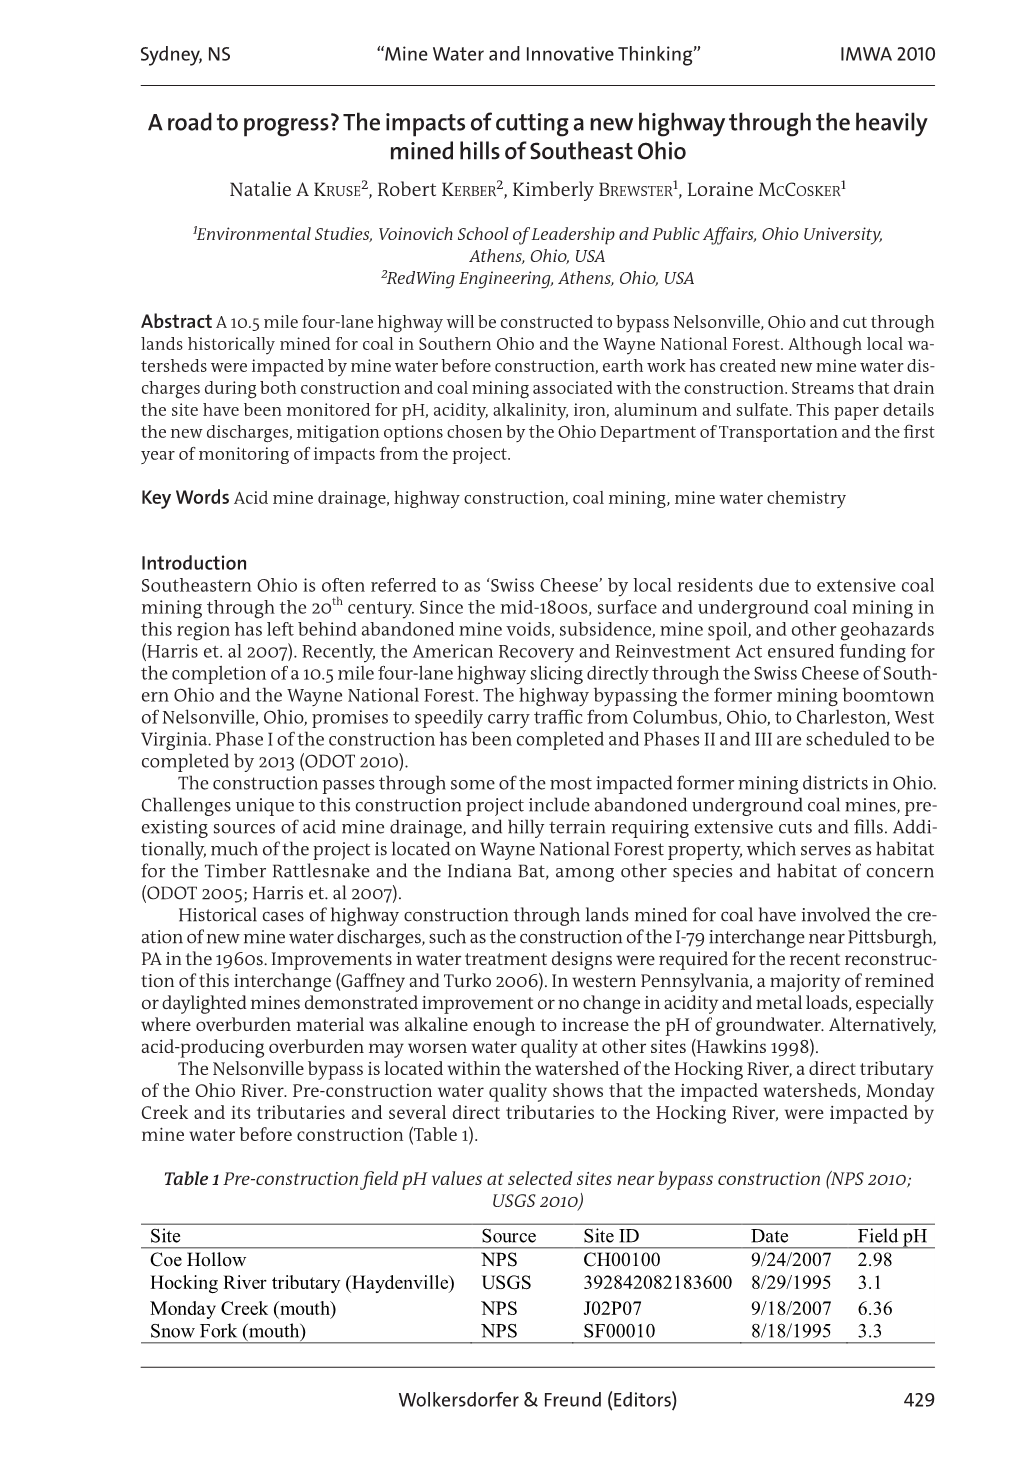 Proceedings IMWA 2010 2010-08-16 06:02 Page 429